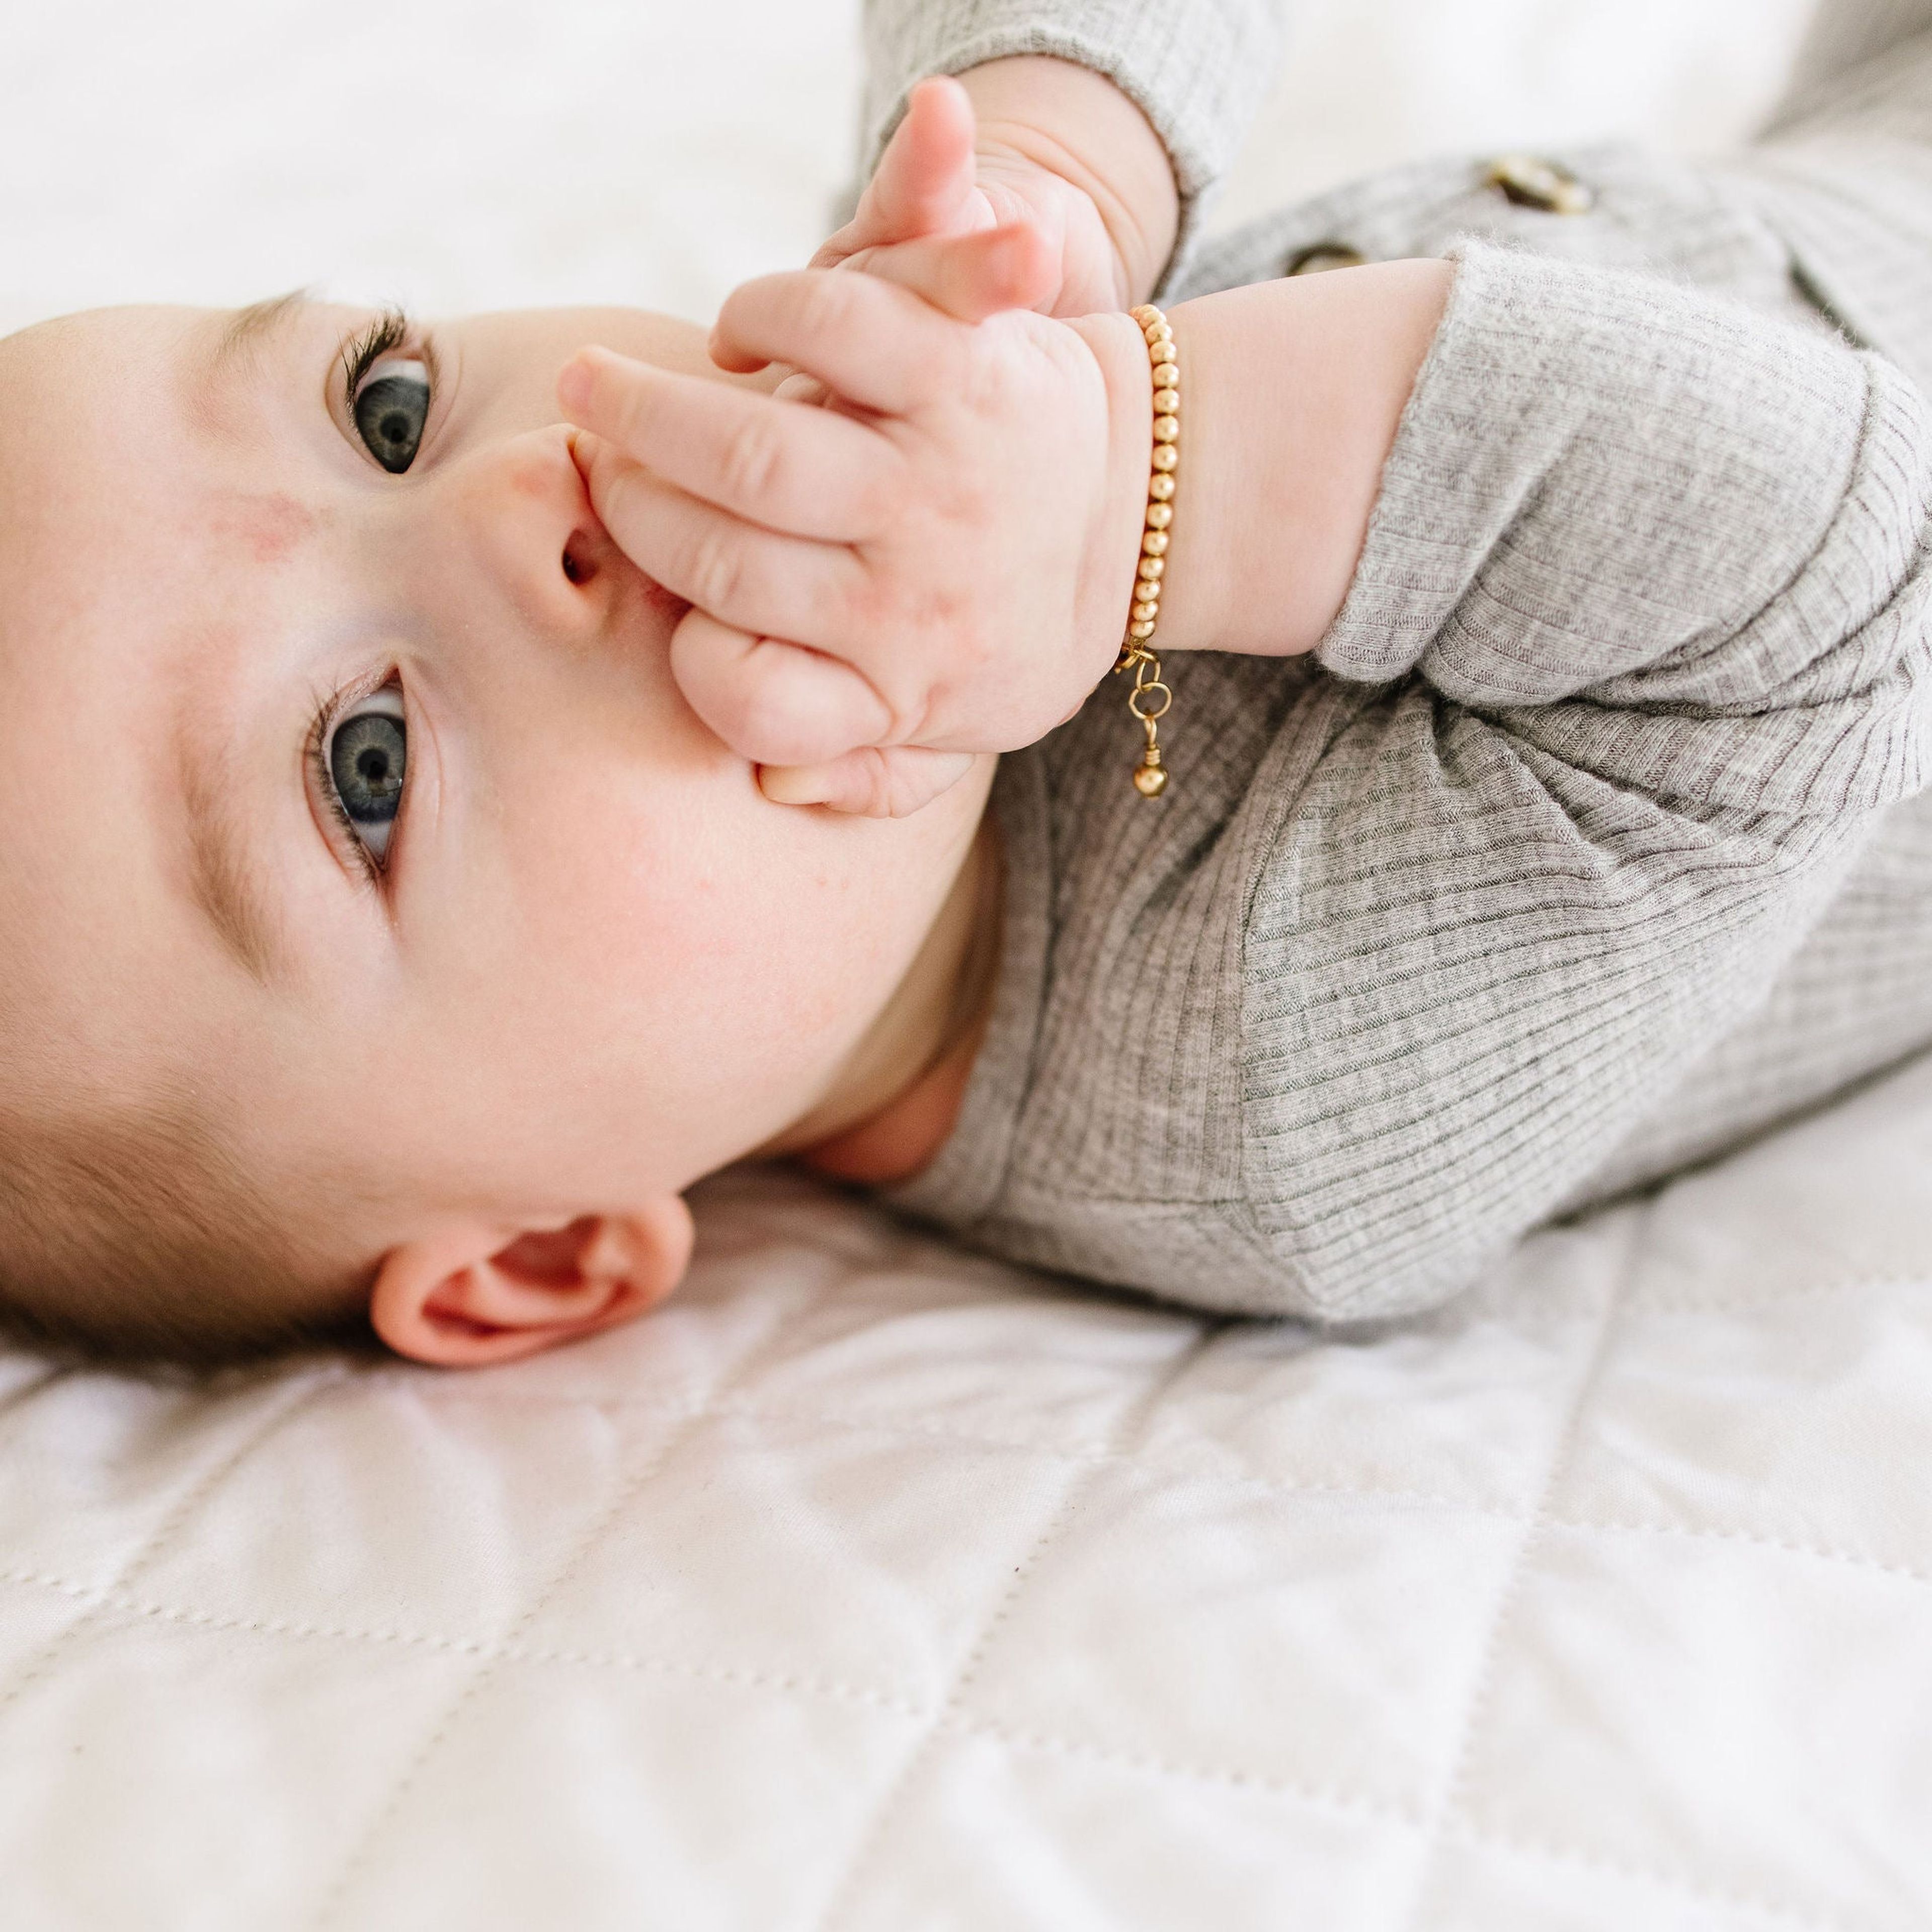 Kindness Baby Bracelet (3MM beads)